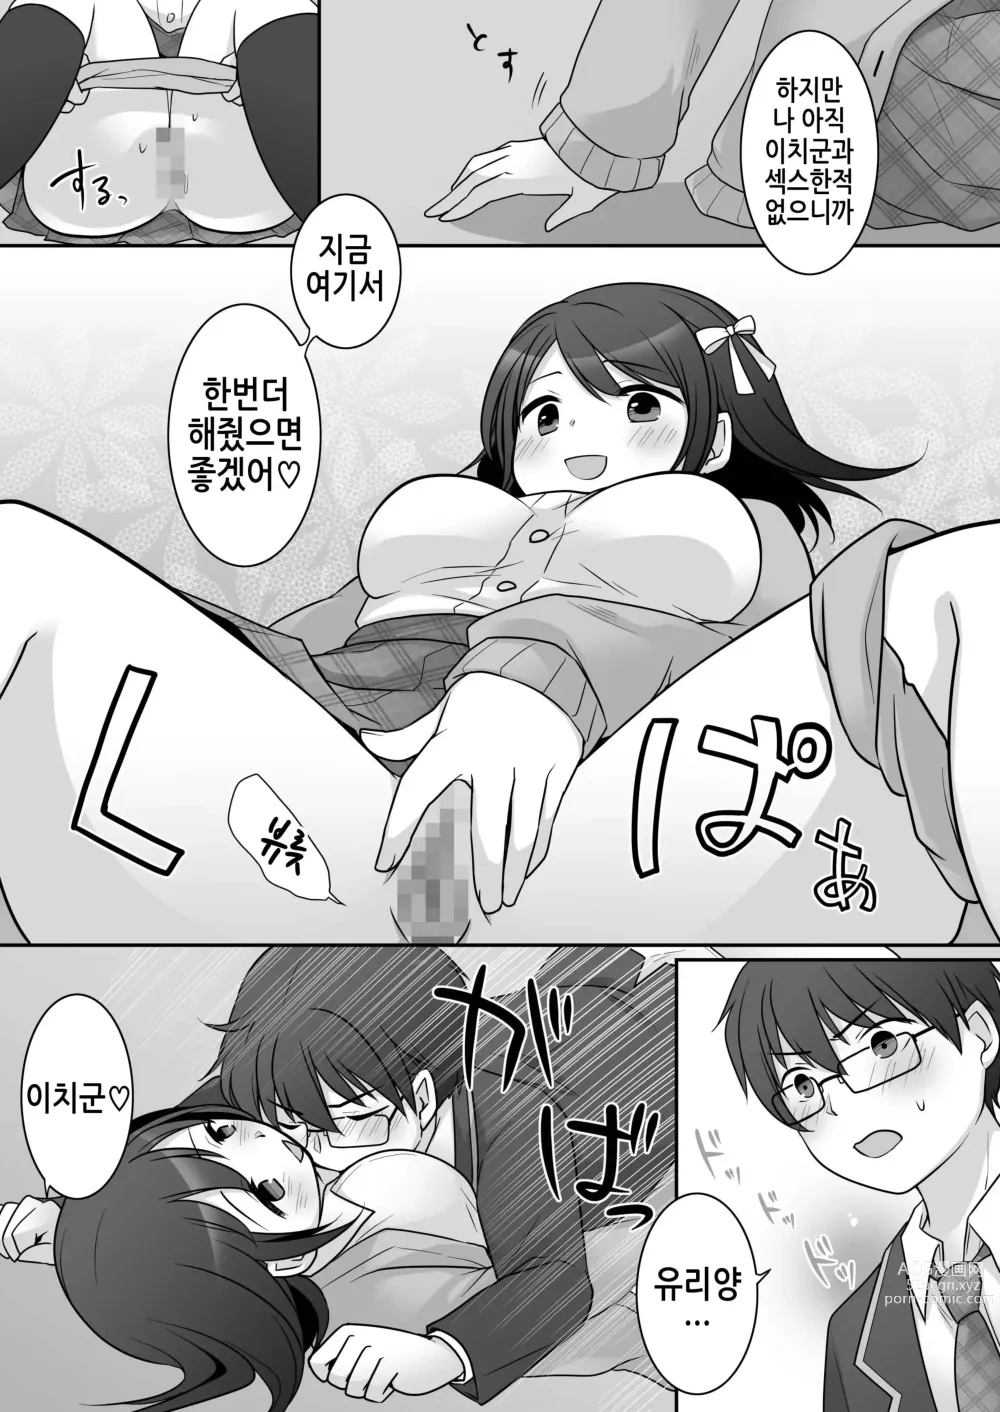 Page 26 of doujinshi 불량 in 그녀 내 여자친구의 몸뚱이는 불량남에게 납치되었다.